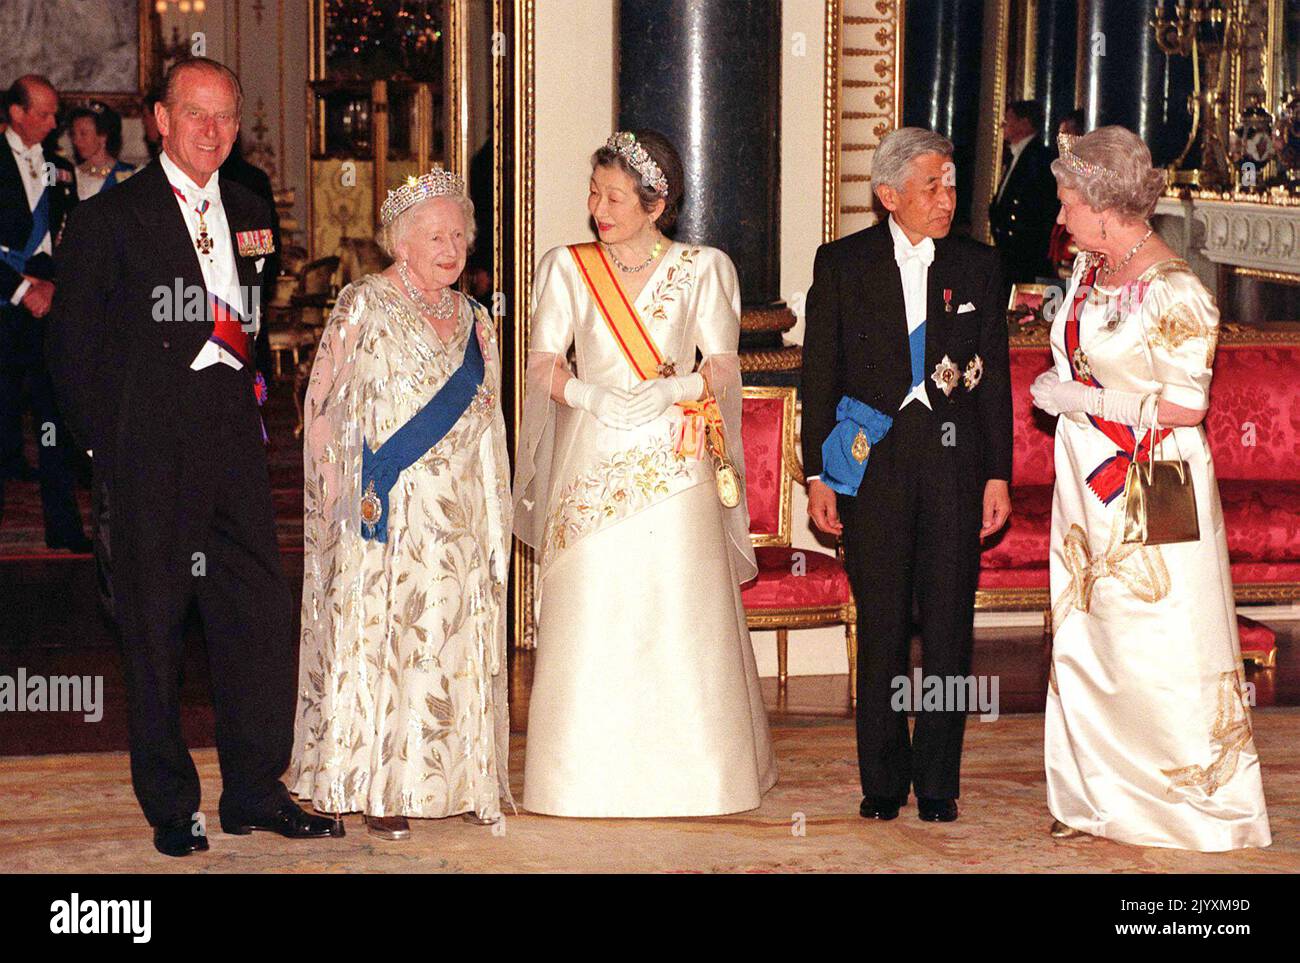 Datei-Foto vom 26/5/1998 von Queen Elizabeth II (rechts) und dem japanischen Kaiser Akihito (zweite rechts), seiner Frau Kaiserin Michiko (Mitte), dem Herzog von Edinburgh (links) und Queen Elizabeth, der Queen Mother, die für Fotografen pausiert, als sie in der State Banquet Hall im Buckingham Palace ankommen. Die Beziehung der Königin zu ihrer Mutter trug zur Mode der Monarchie bei, und obwohl sie durch ihren Tod verwüstet war, erkannten Freunde, dass die Königin in den folgenden Jahren „zu ihrem eigenen kam“. Ausgabedatum: Donnerstag, 8. September 2022. Stockfoto